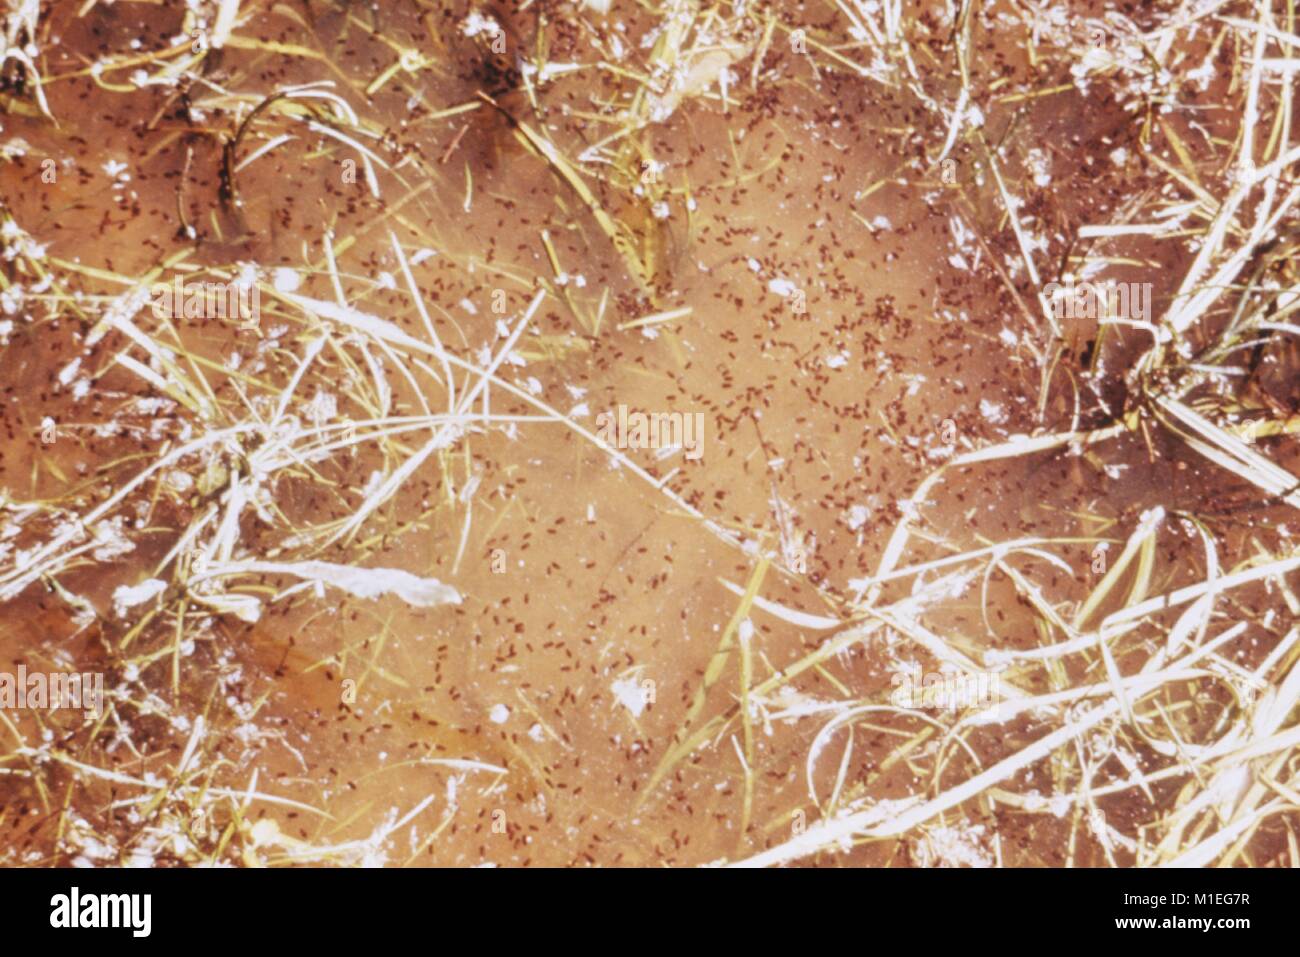 Antenna fotografia di close-up di mosquito pupe (fase tardiva larve) in acqua di vegetazione, preso come parte di un procedimento di indagine nel vettore di malattie, Albany County, Wyoming 1976, 1976. Immagine cortesia CDC. () Foto Stock